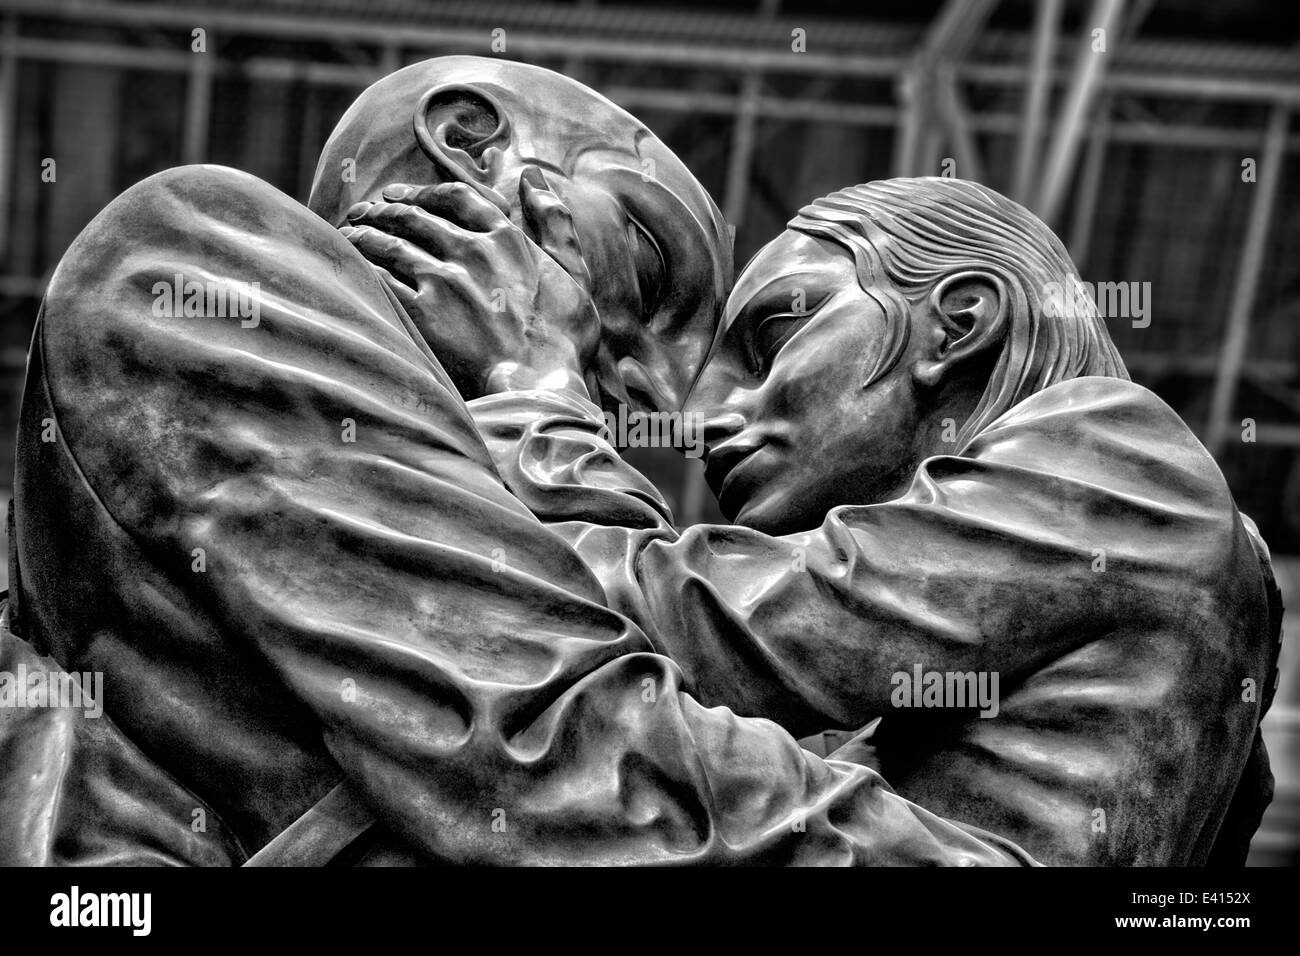 Le lieu de réunion, sculpture en bronze, St Pancras International Station, London, UK Banque D'Images